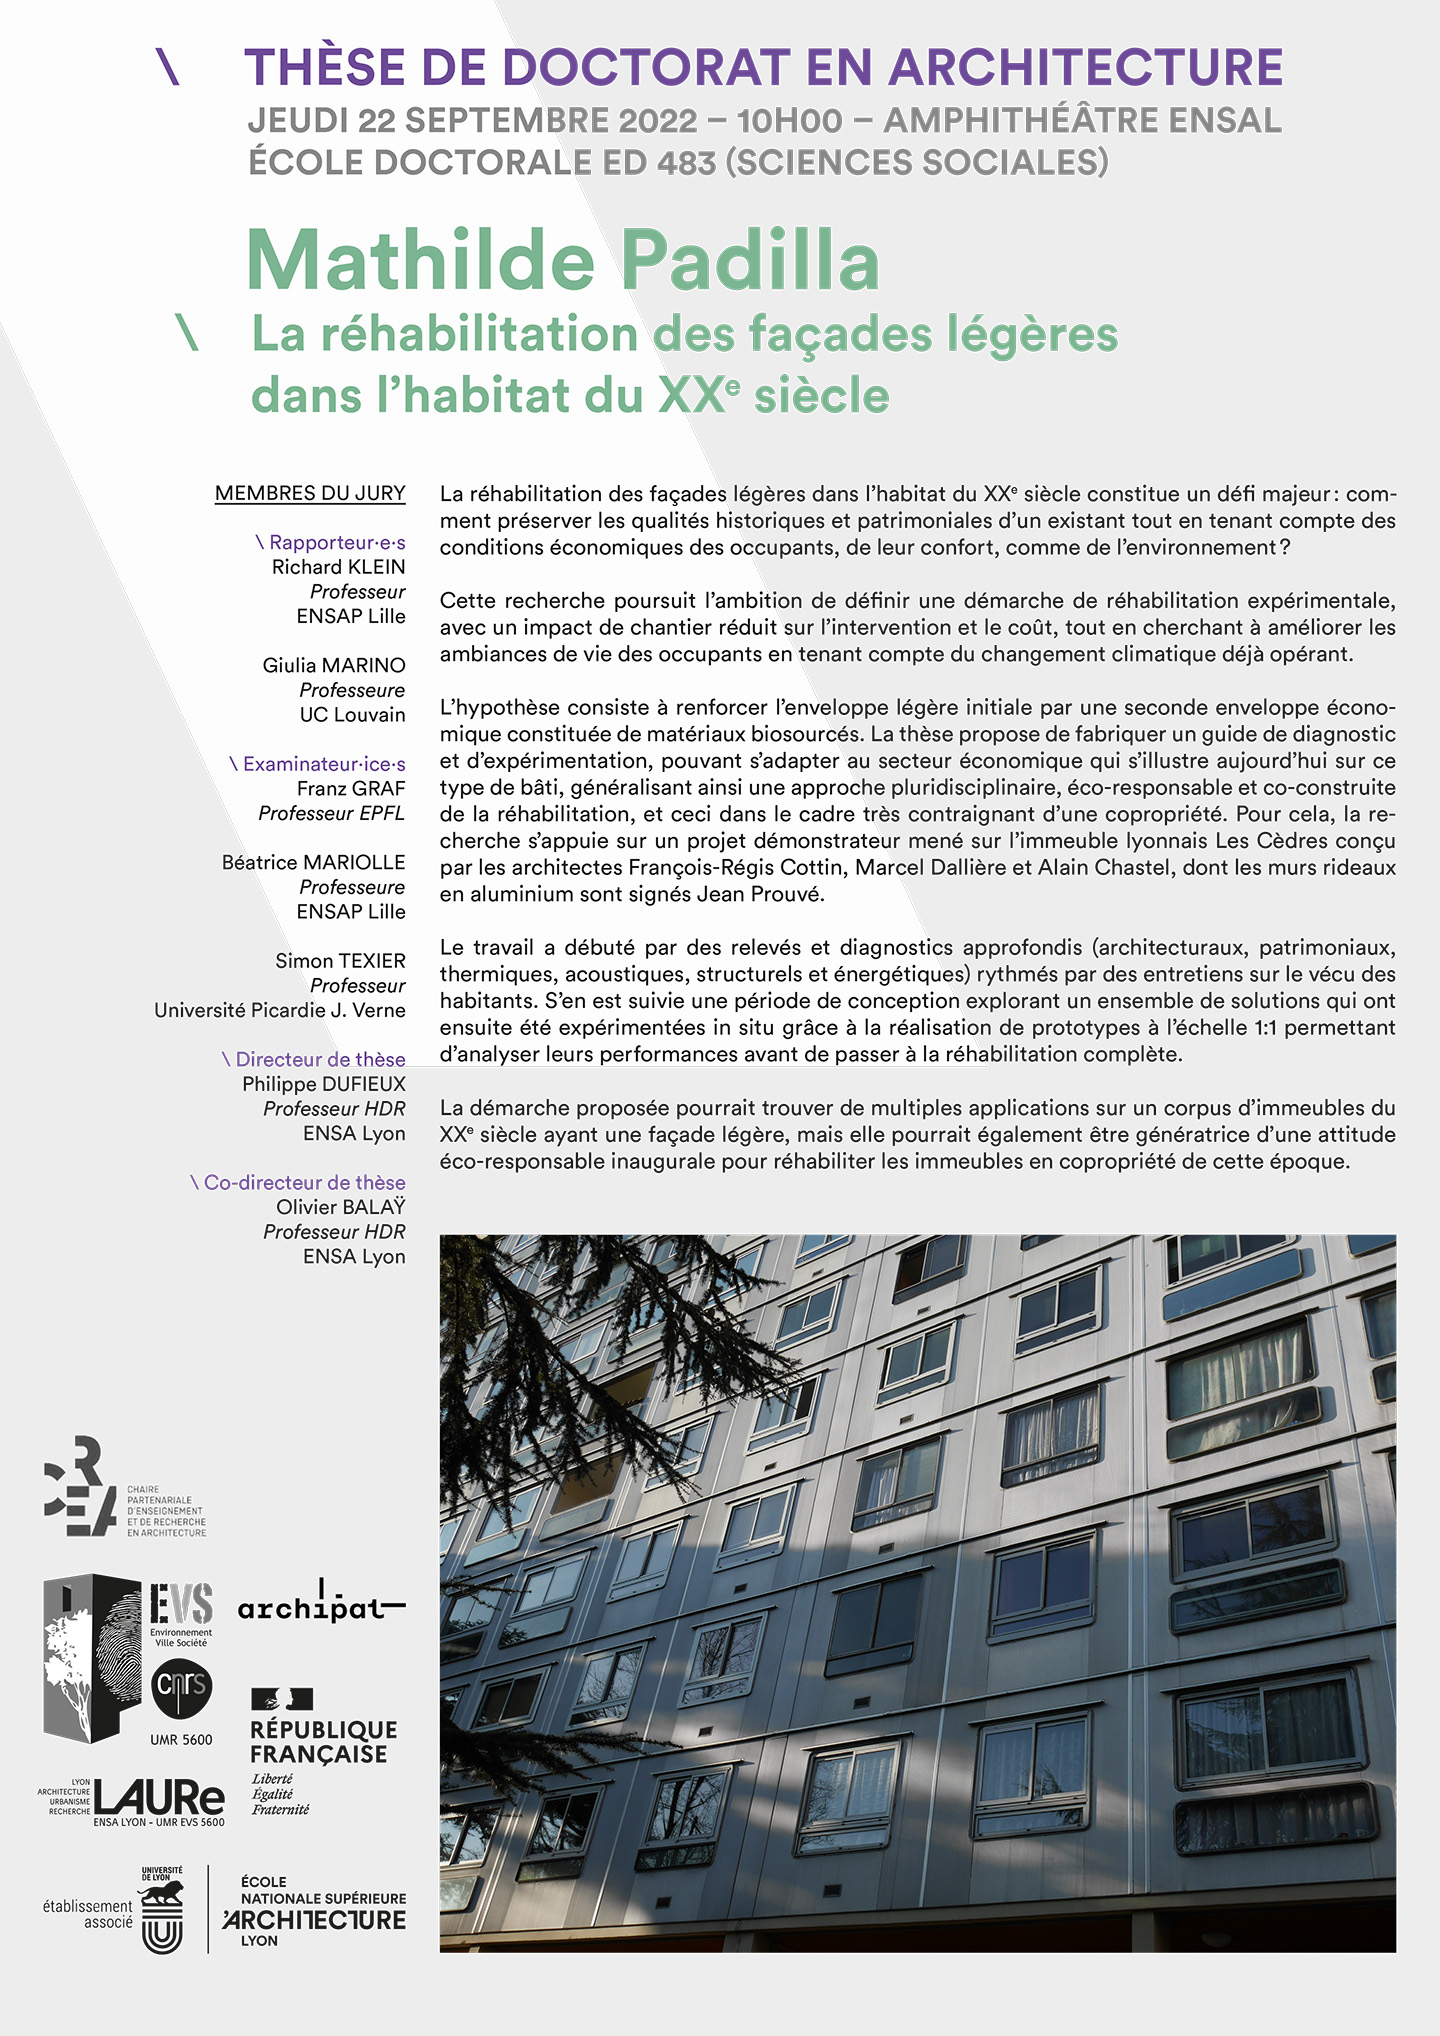 <strong></noscript>Soutenance de thèse et réhabilitation des façades légères Jean Prouvé d’un immeuble lyonnais</strong>